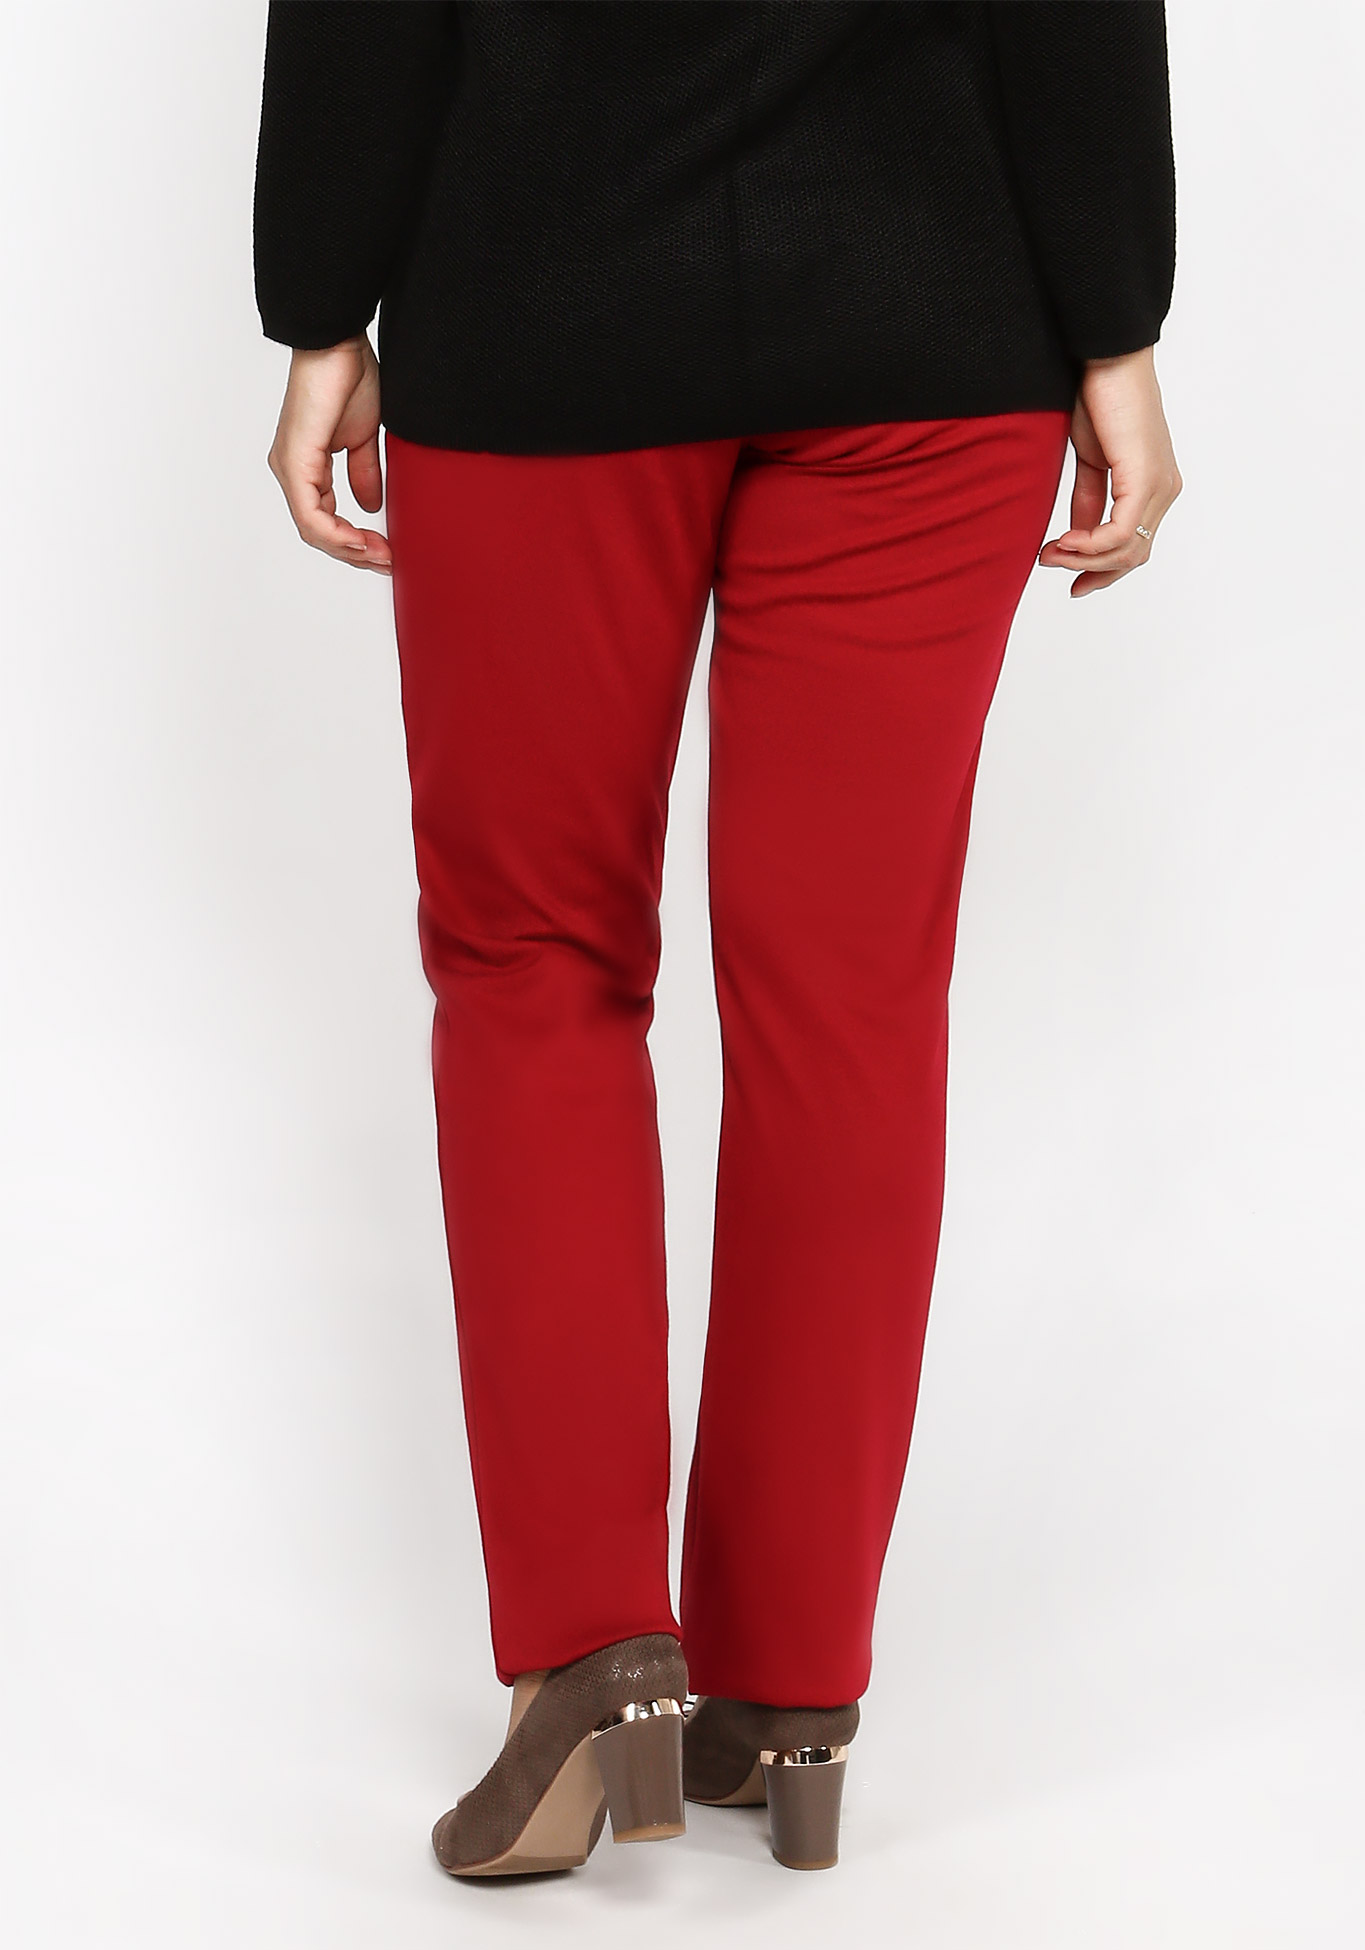 Брюки на резинке с боковыми карманами Bianka Modeno, размер 52, цвет красный - фото 2